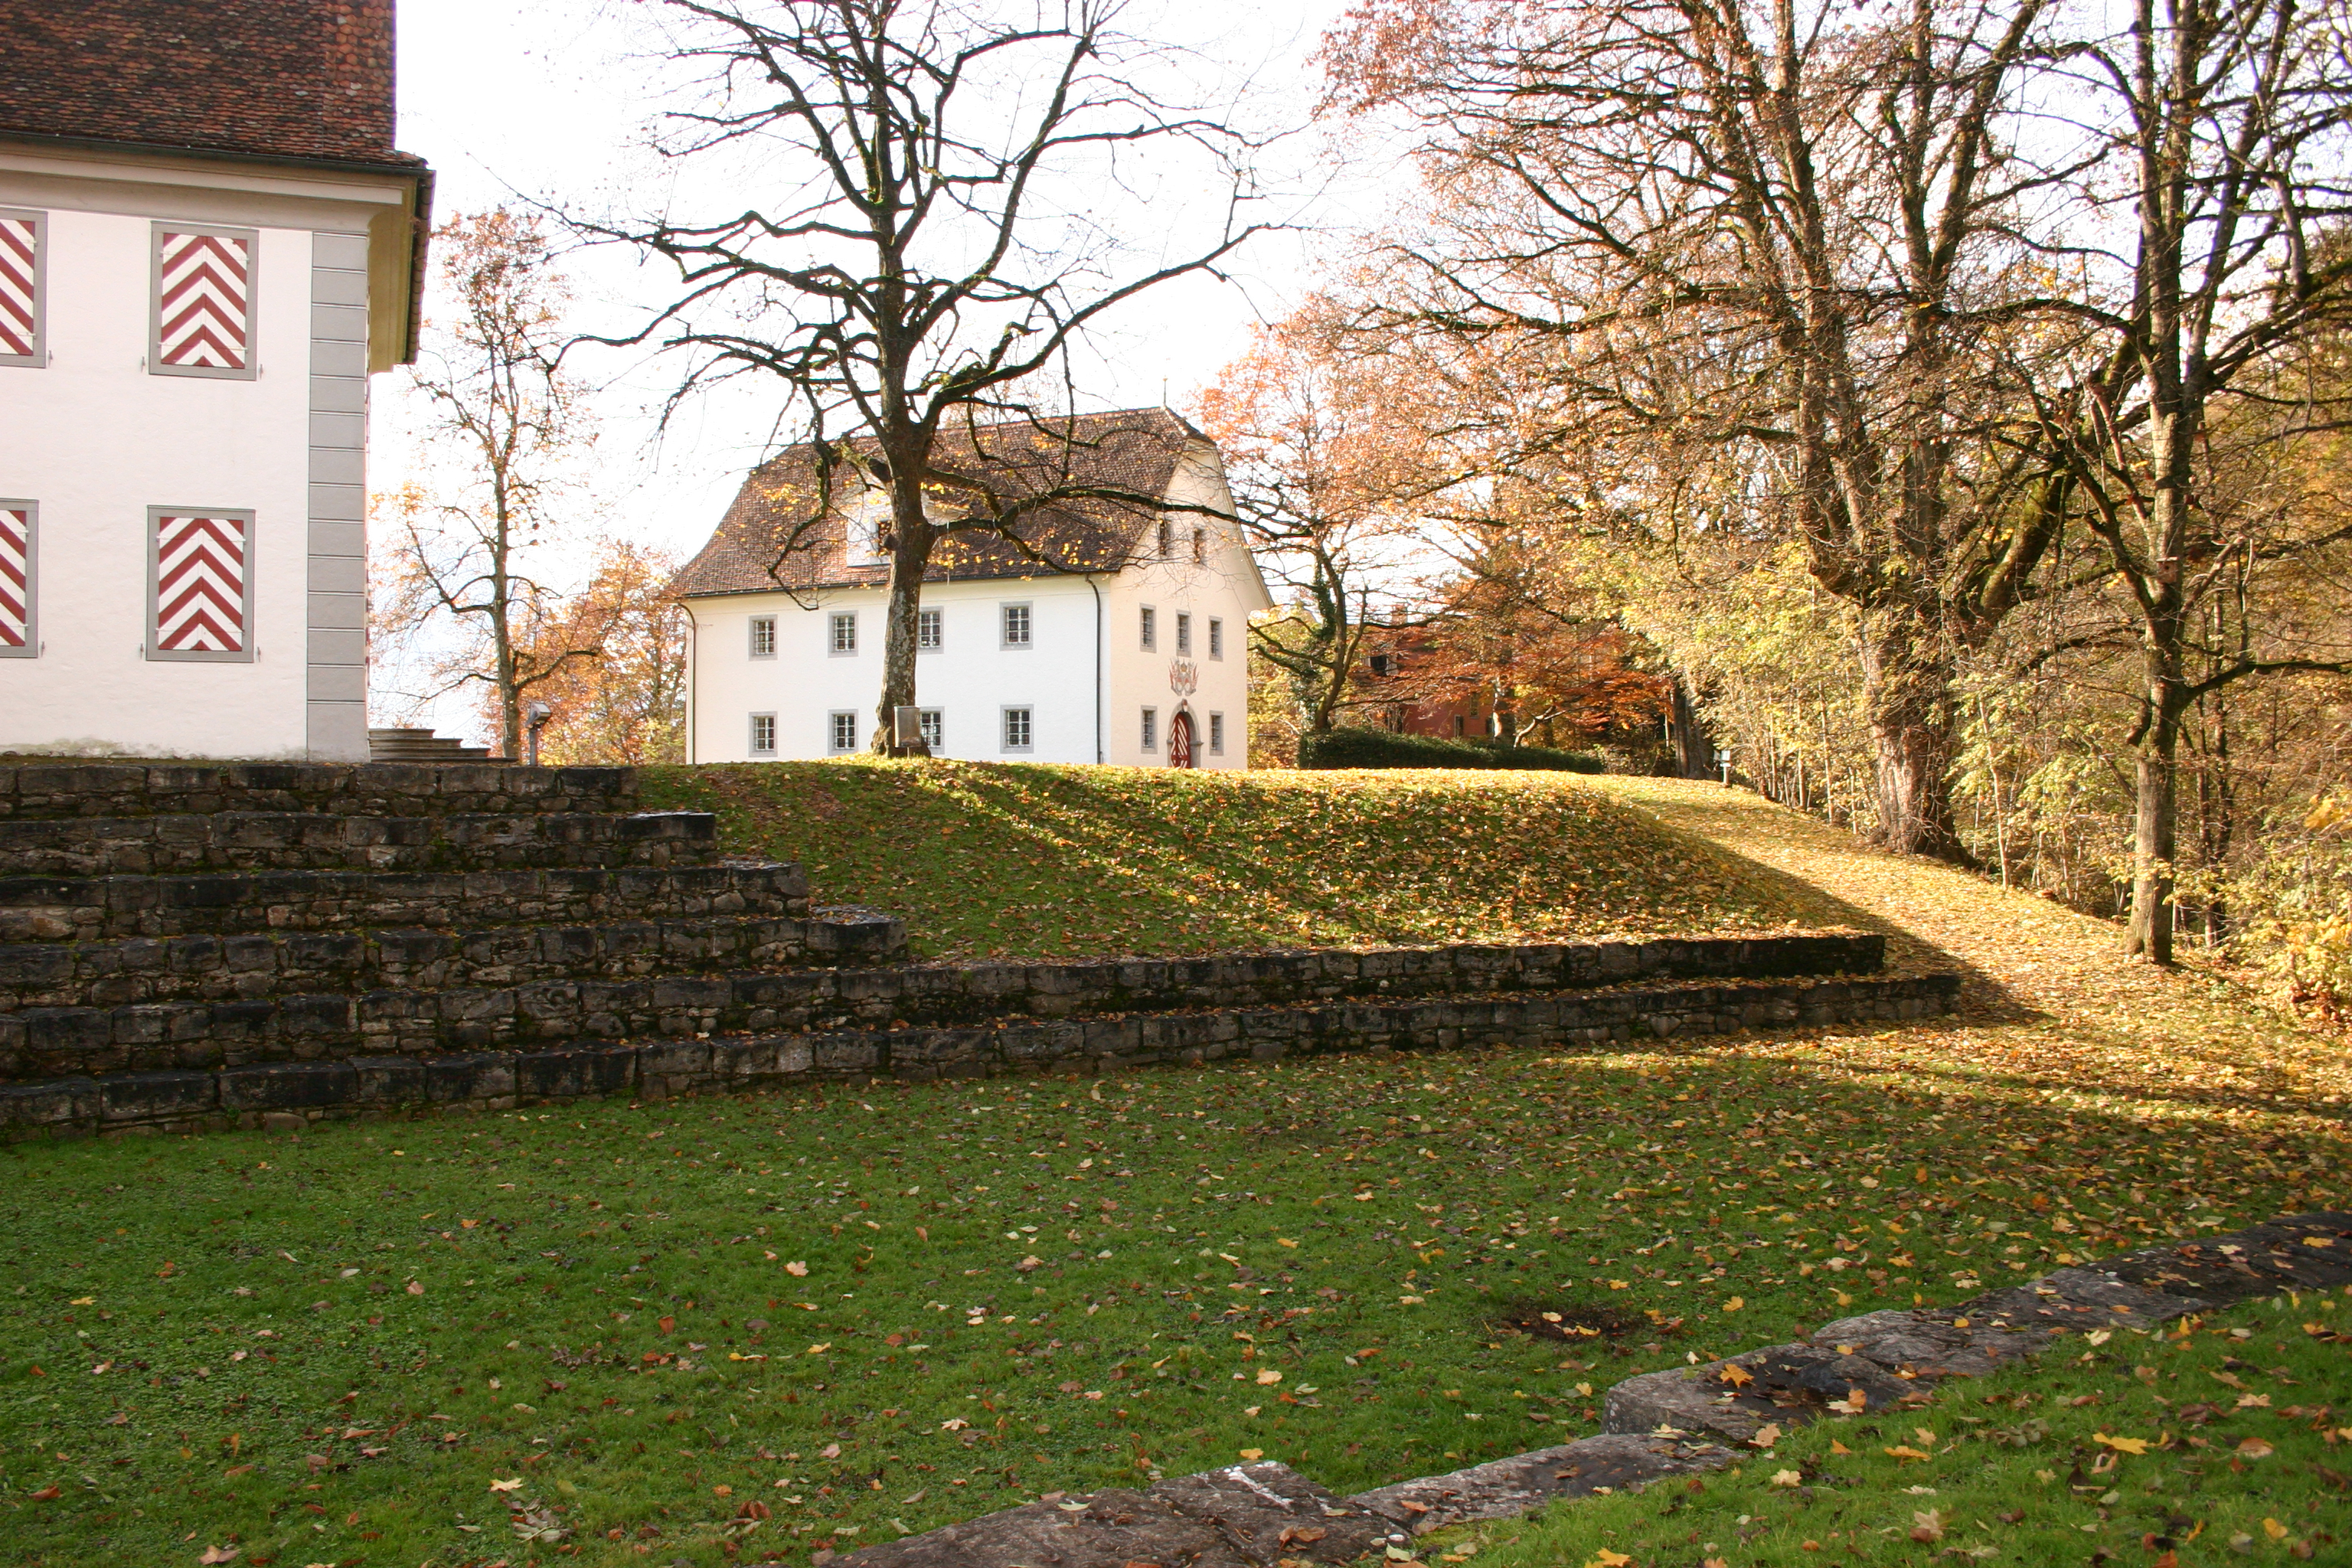 Auf dem Bild ist ein Teil der Burg Landenberg aus Sarnen zu sehen. Davor liegt eine Grüne Wiese mit jedoch kahlen Bäumen aus einem kühlen Herbsttag.